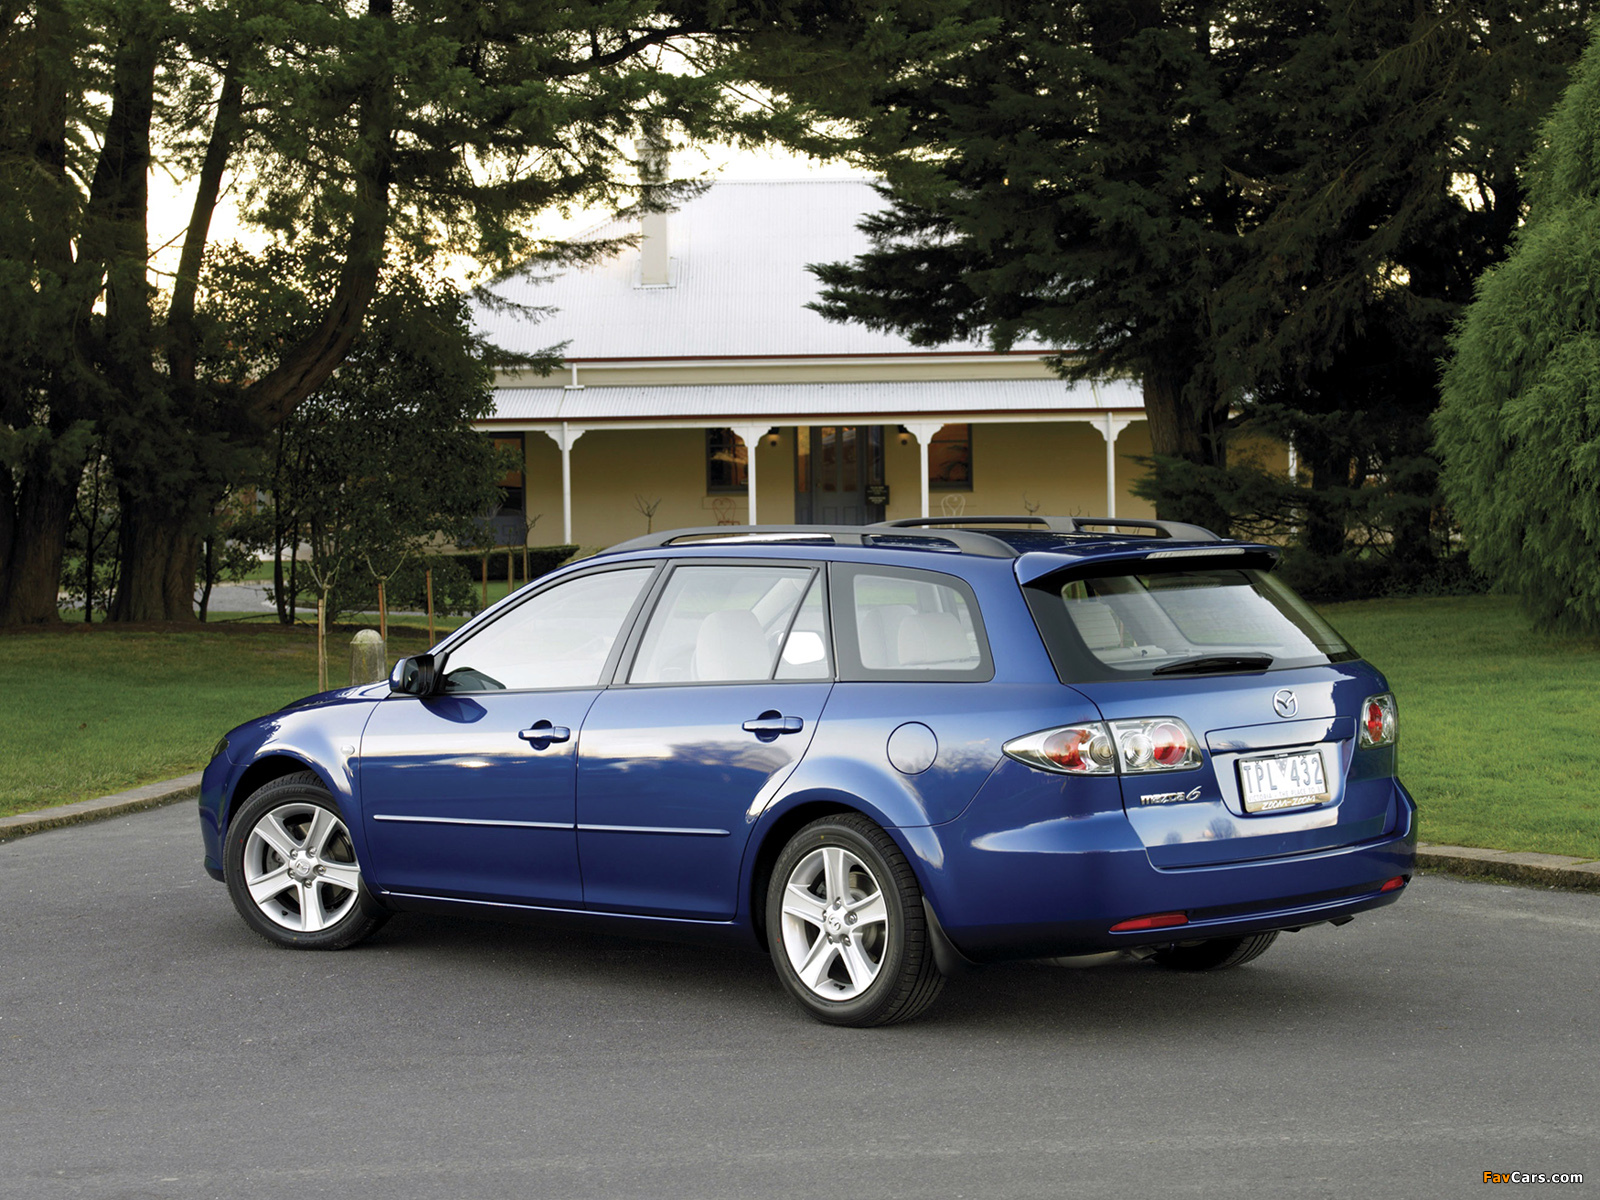 Мазда gg универсал. Mazda 6 Wagon. Мазда 6 универсал 2005. Мазда 6 универсал 2006. Мазда 6 Wagon 2005.